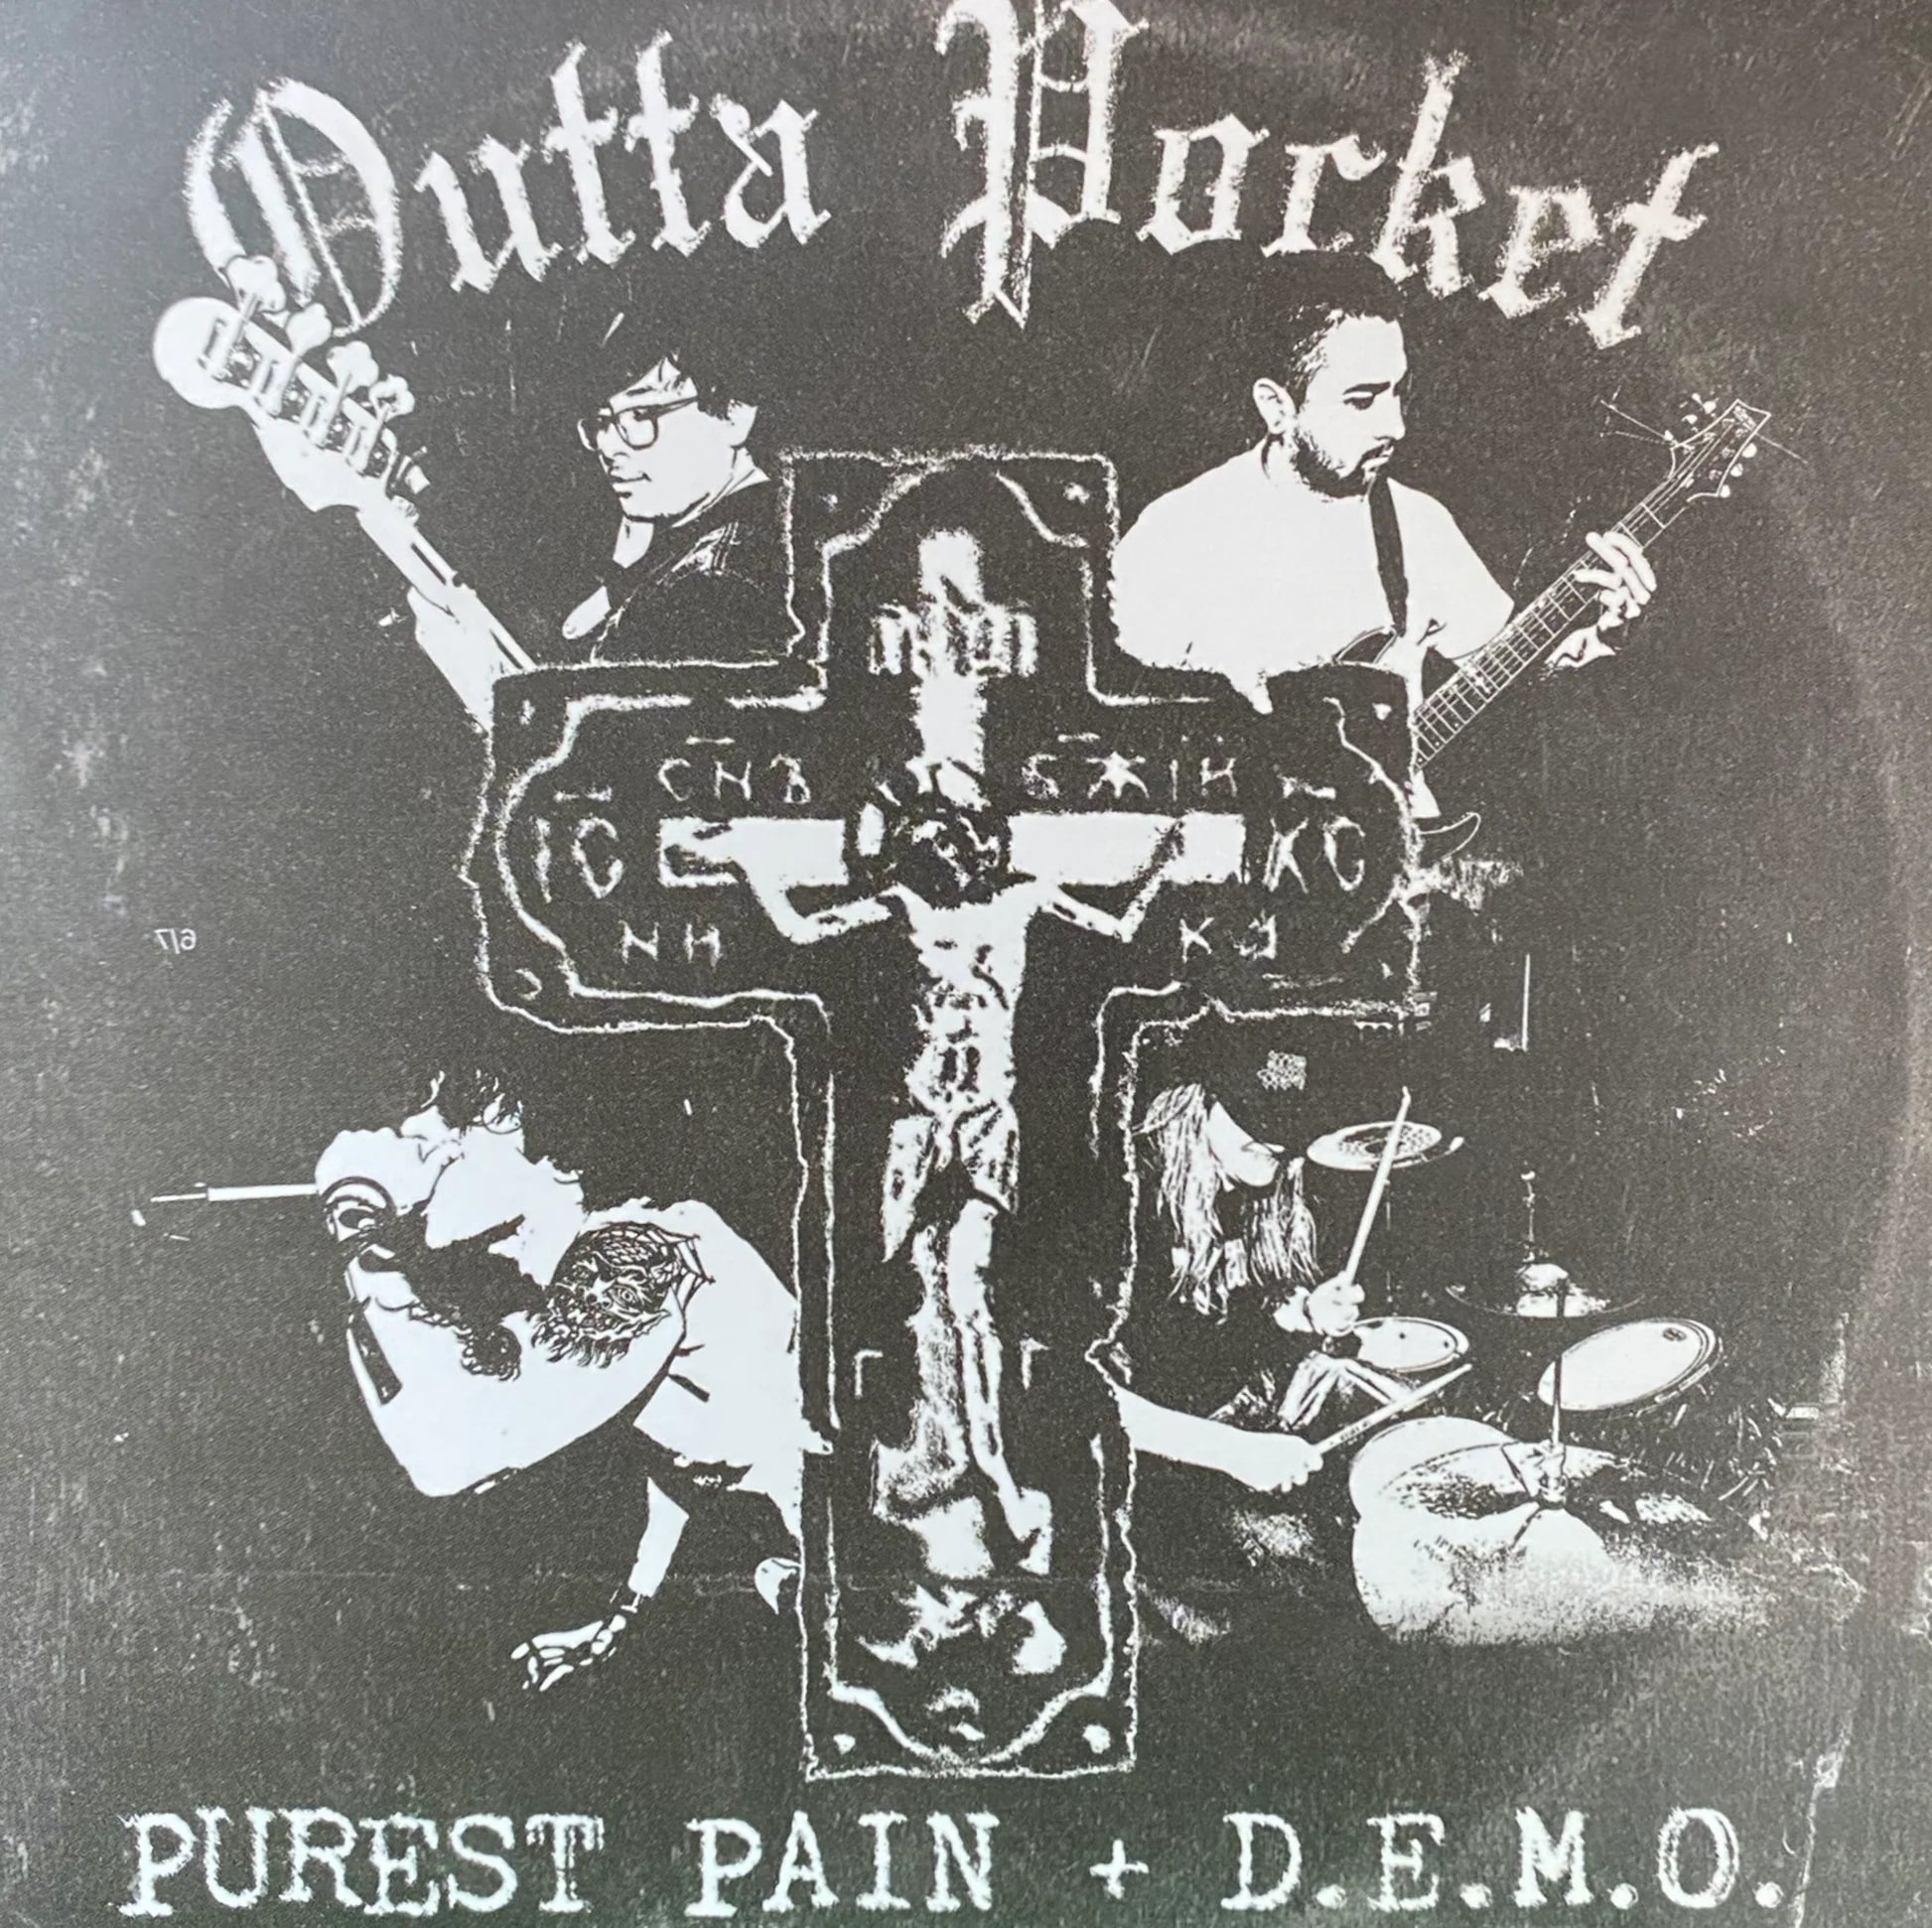 OUTTA POCKET - PUREST PAIN + D.E.M.O. Vinyl 7"